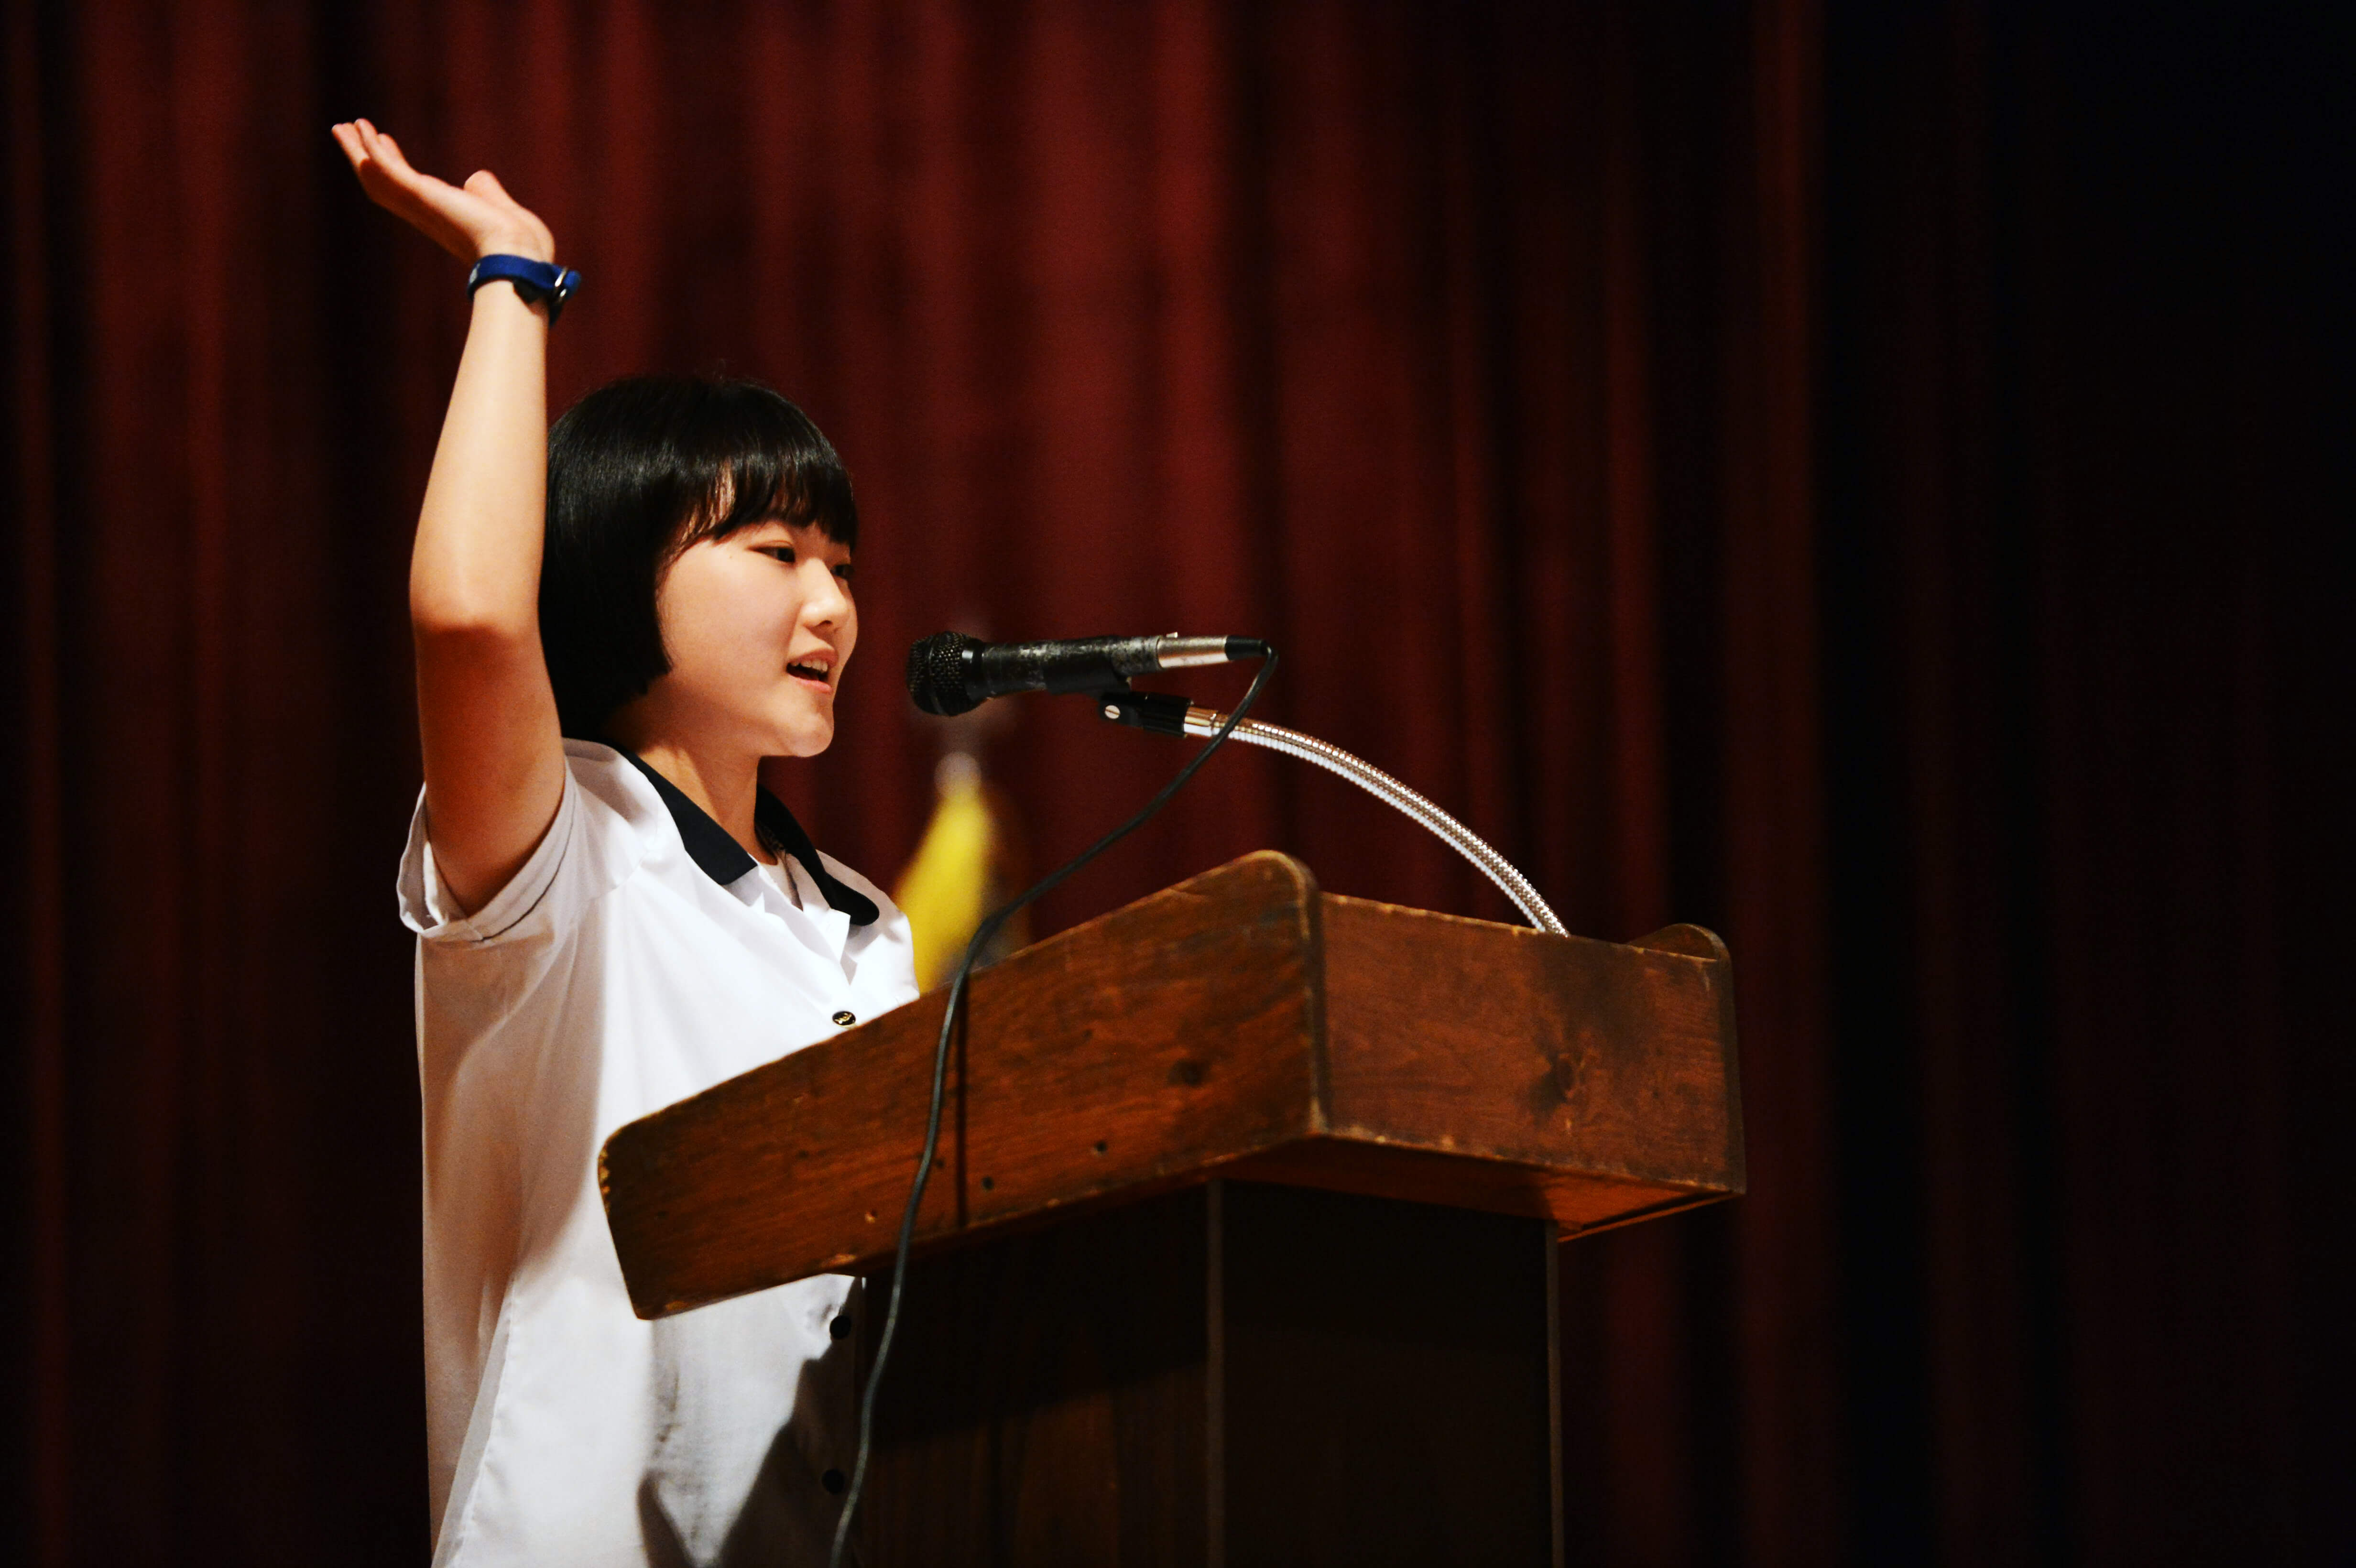 A girl standing at a podium giving a speech